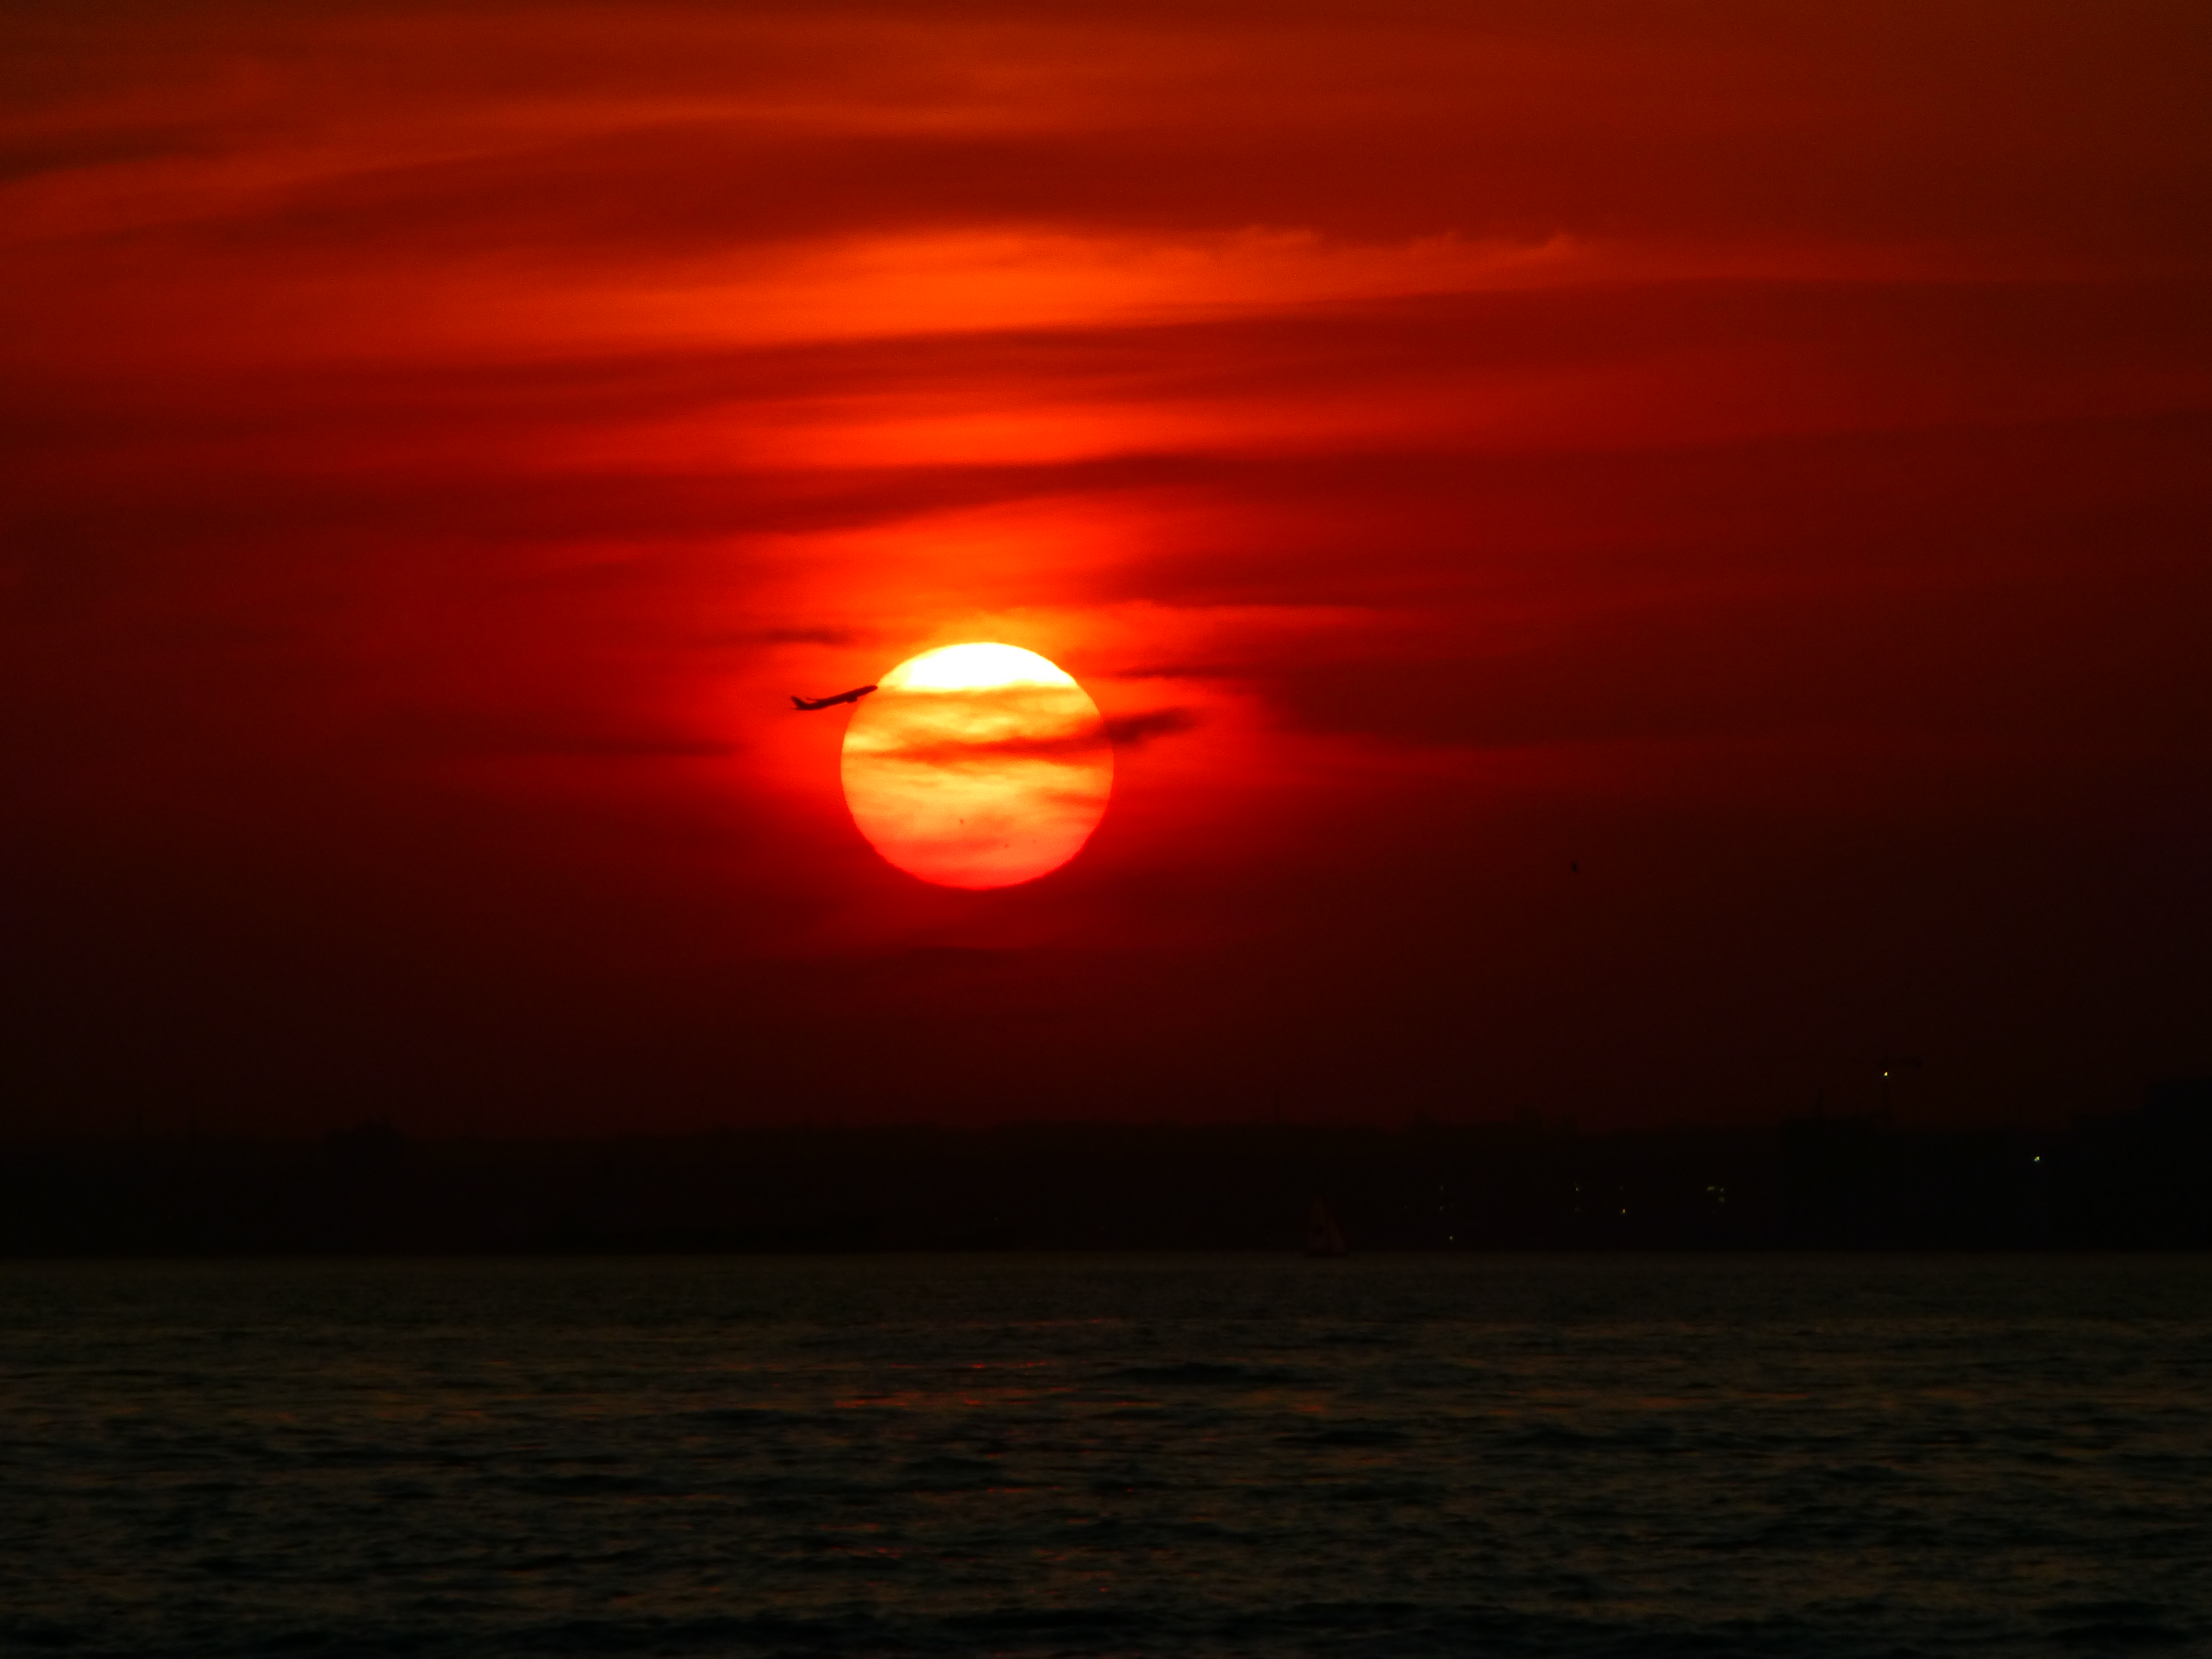 Sunset photo